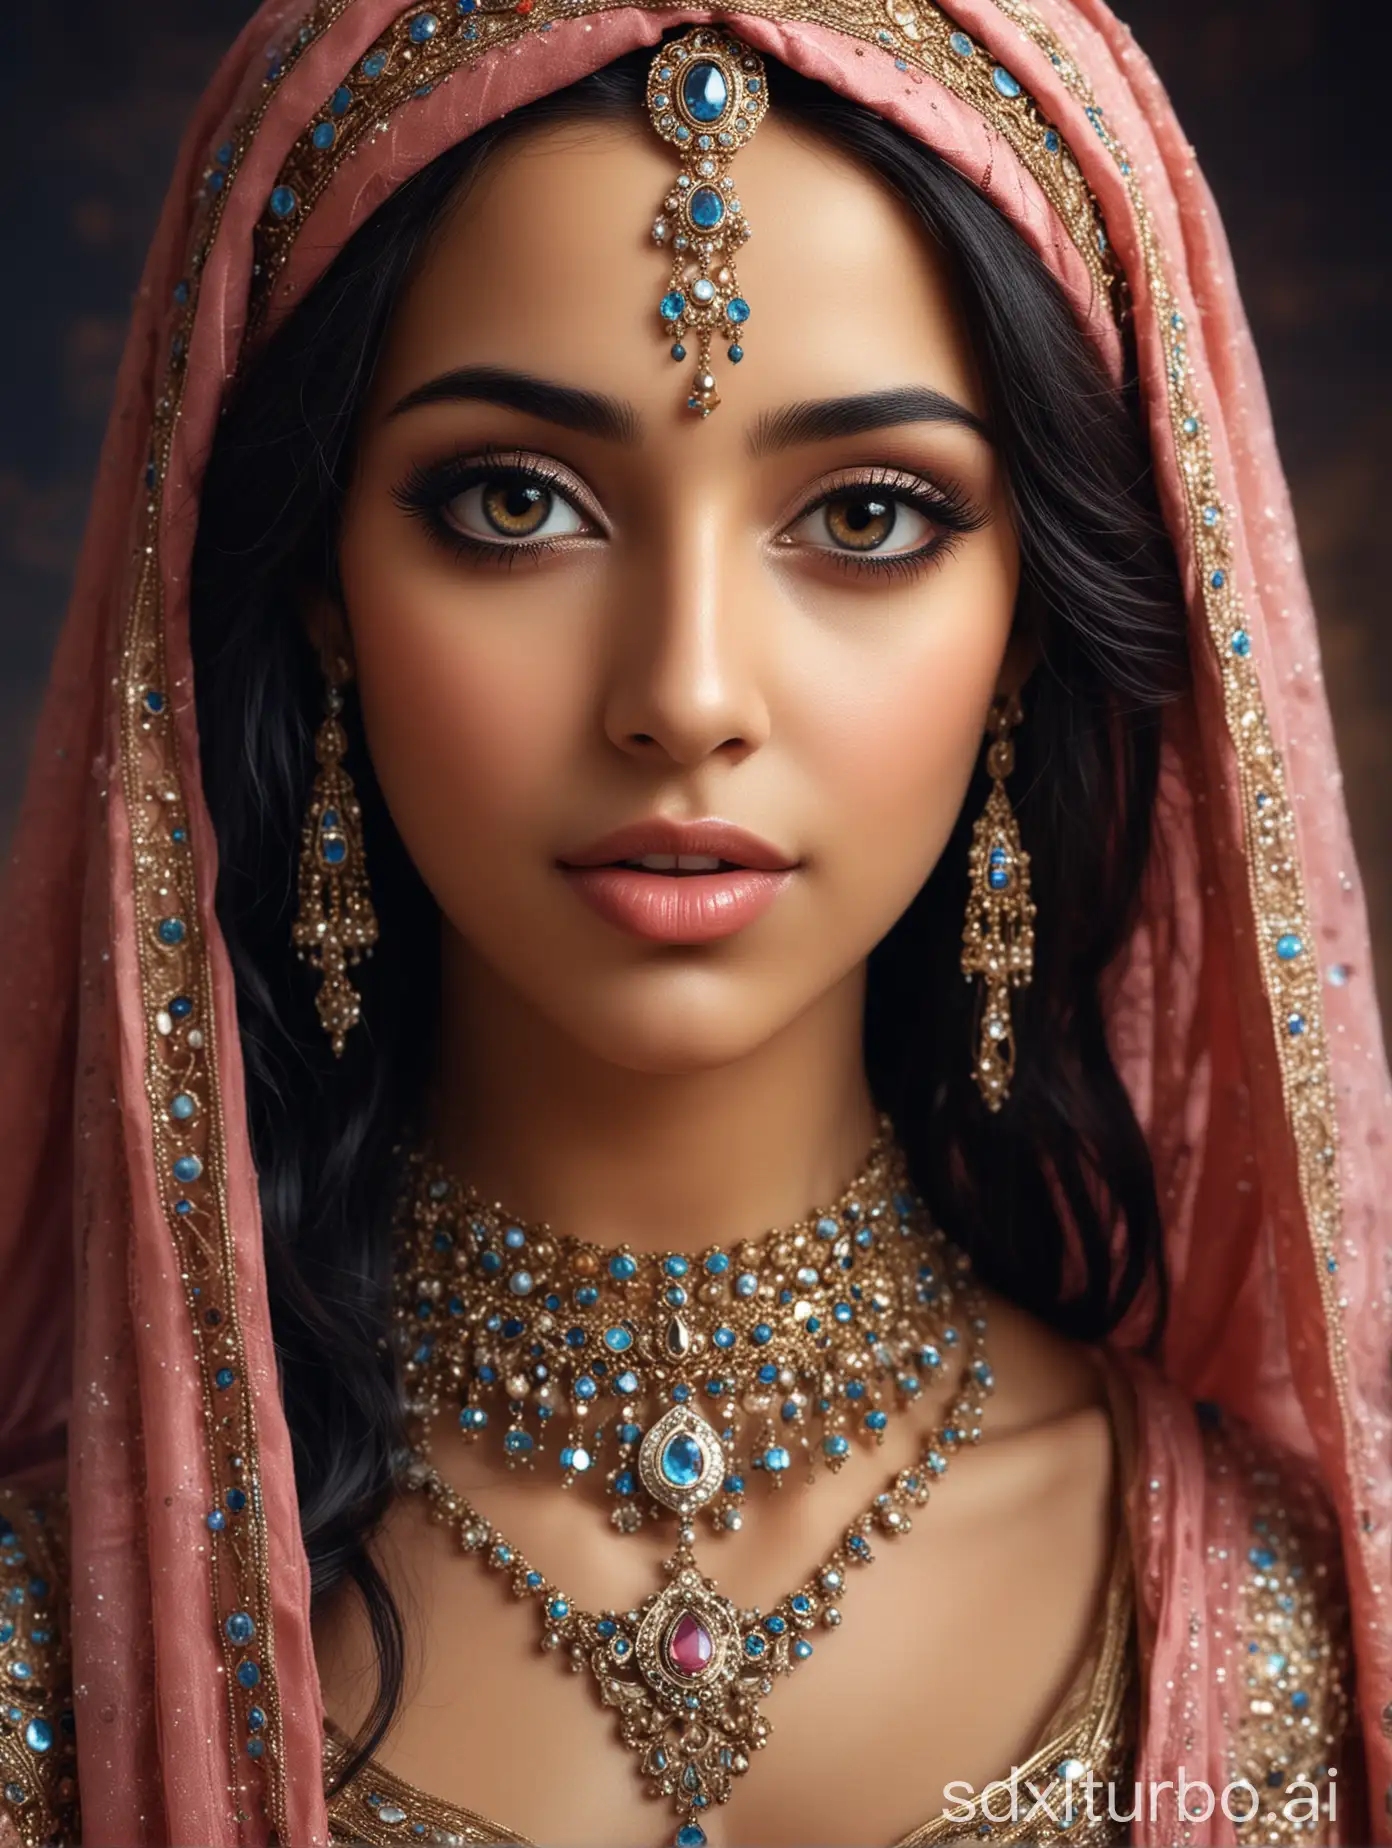 Portrait einer arabischen Prinzessin aus tausend und einer Nacht,
verträmt, märchenhaft, schön,
sehr detailreich